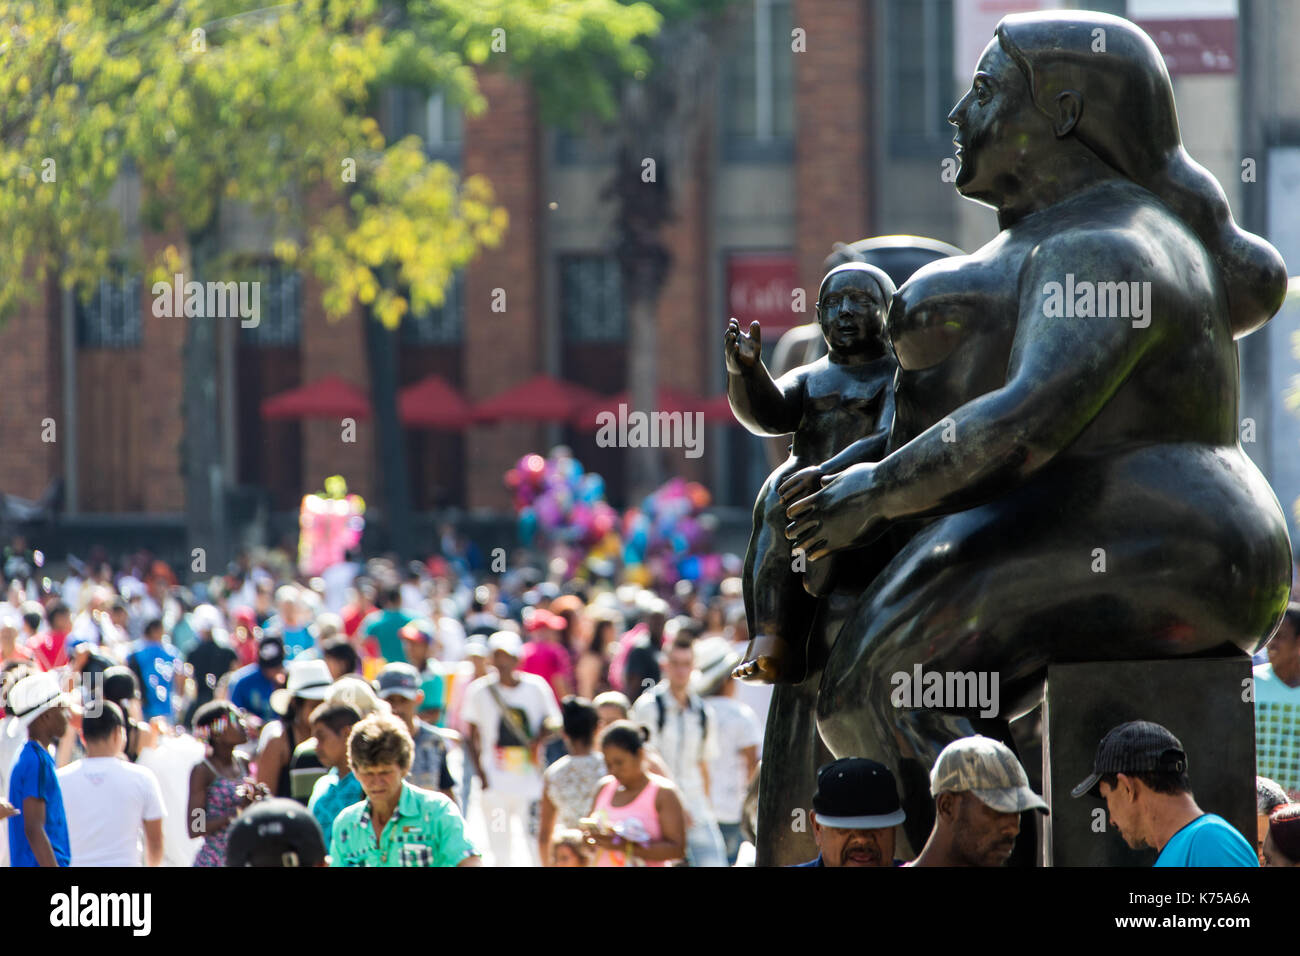 La Maternidad sculpture, Botero Plaza, Medellin, Colombia Stock Photo